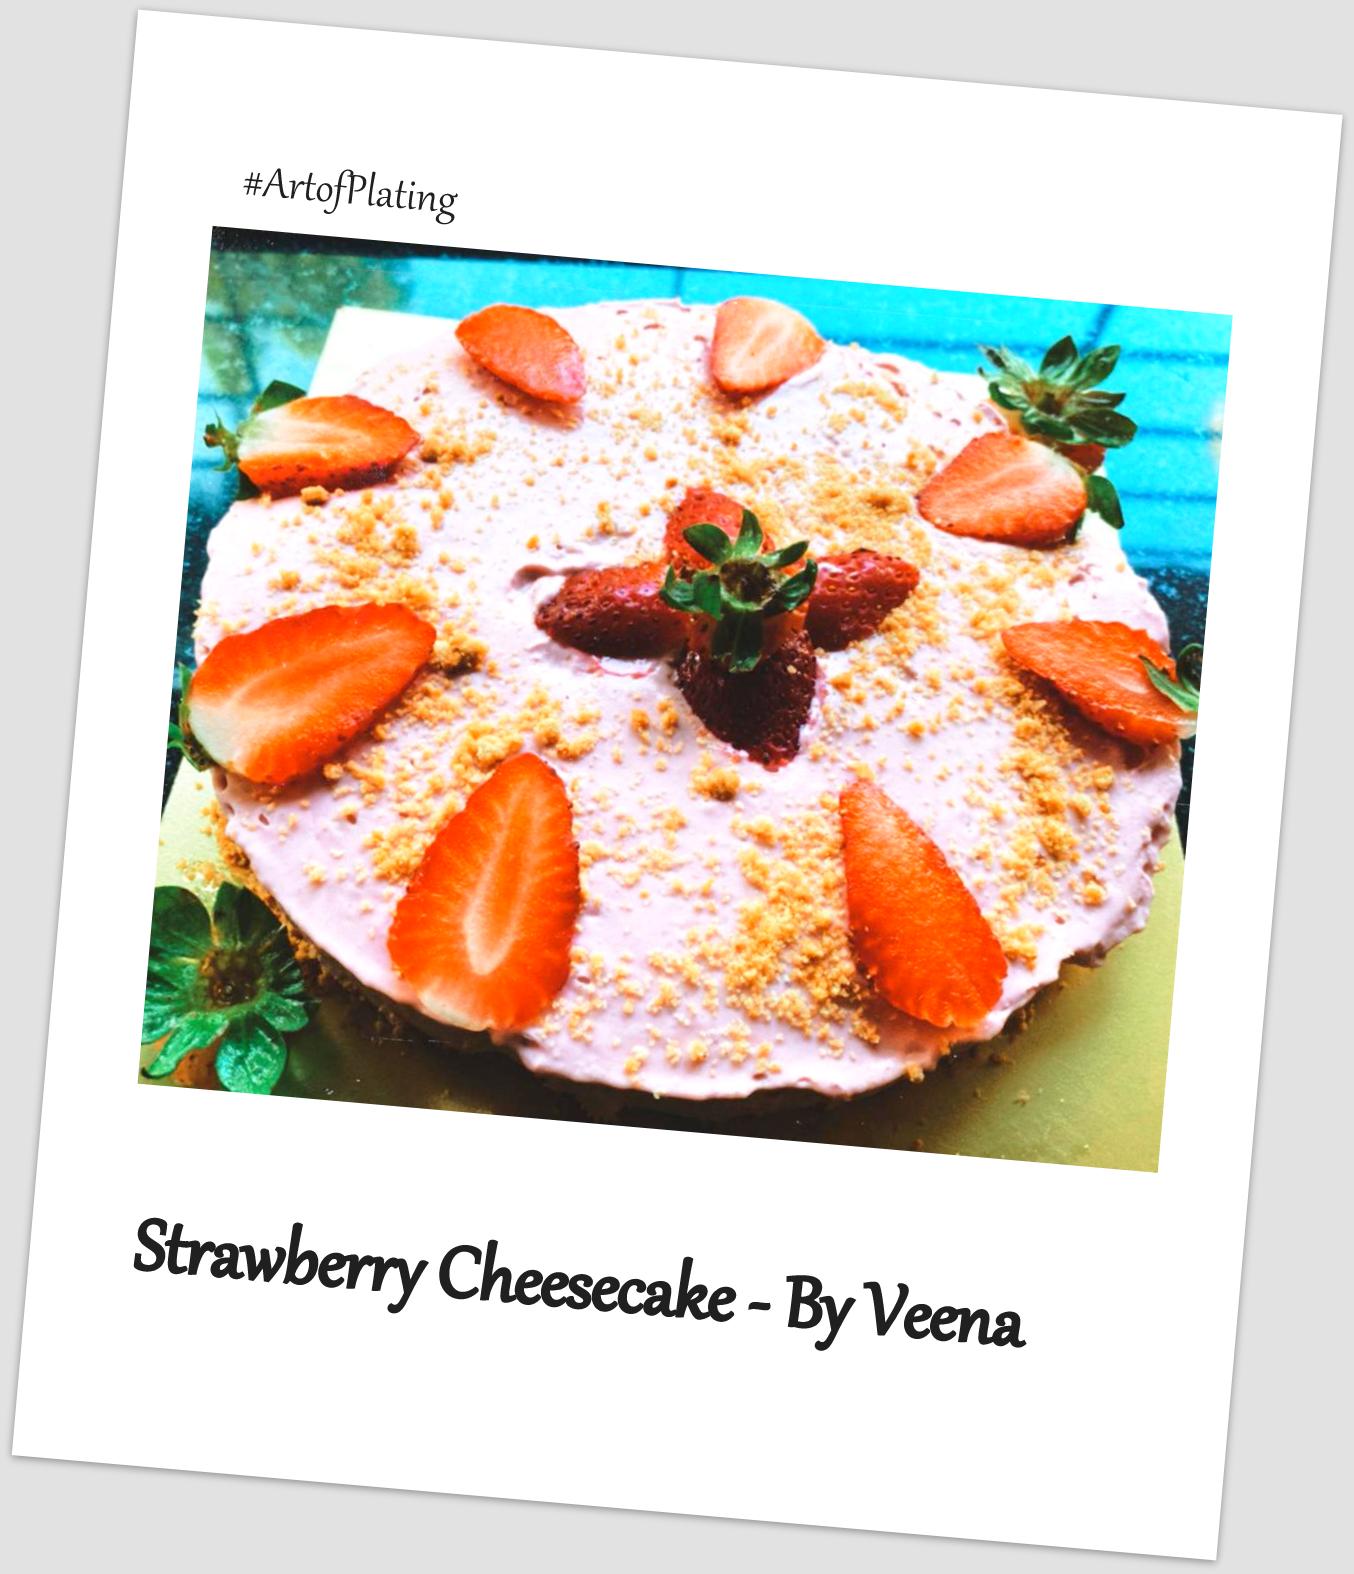 Strawberry Cheesecake by Veena